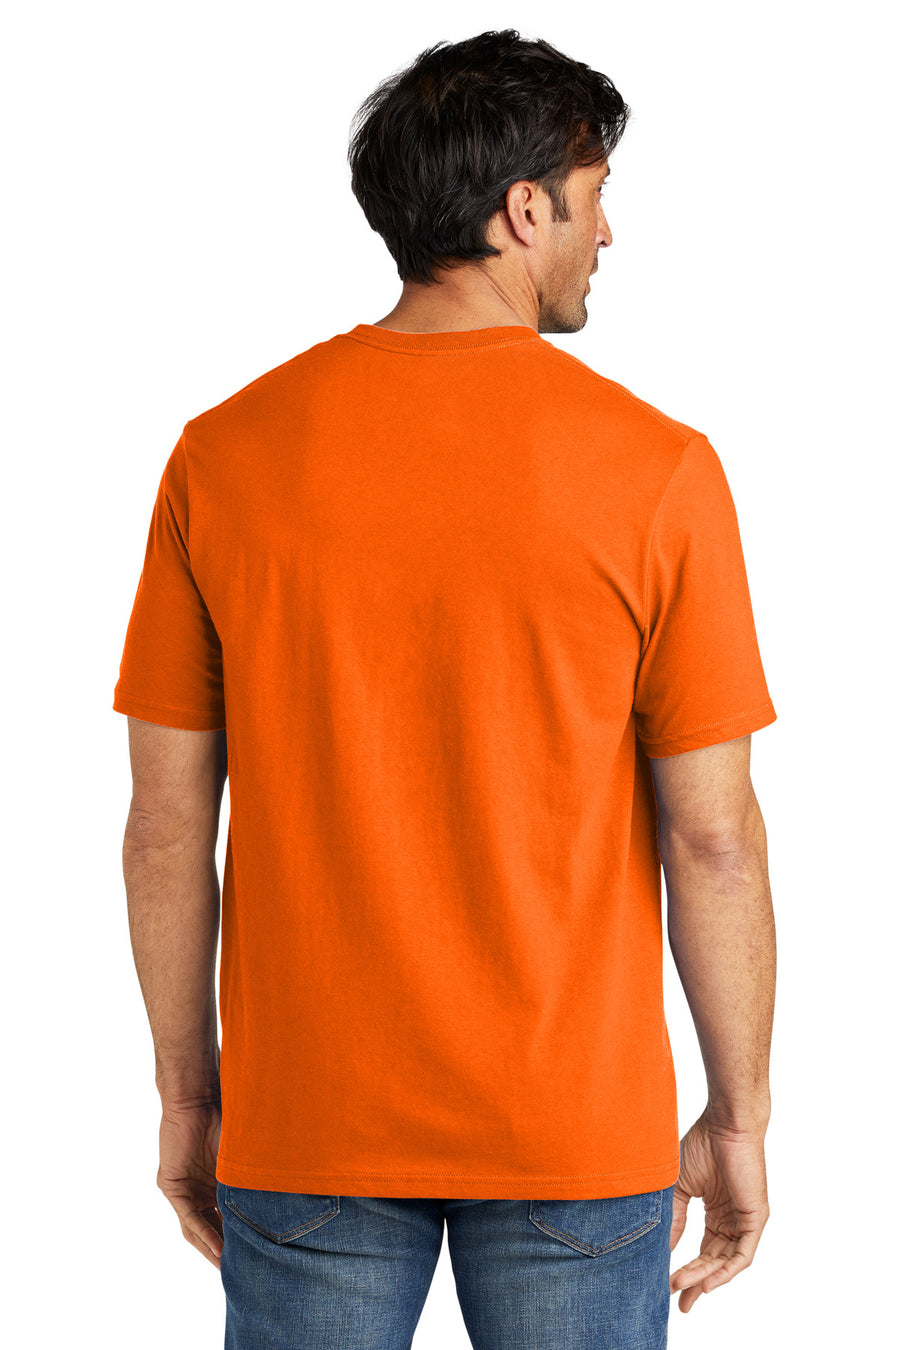 VL100-Safety Orange-back_model